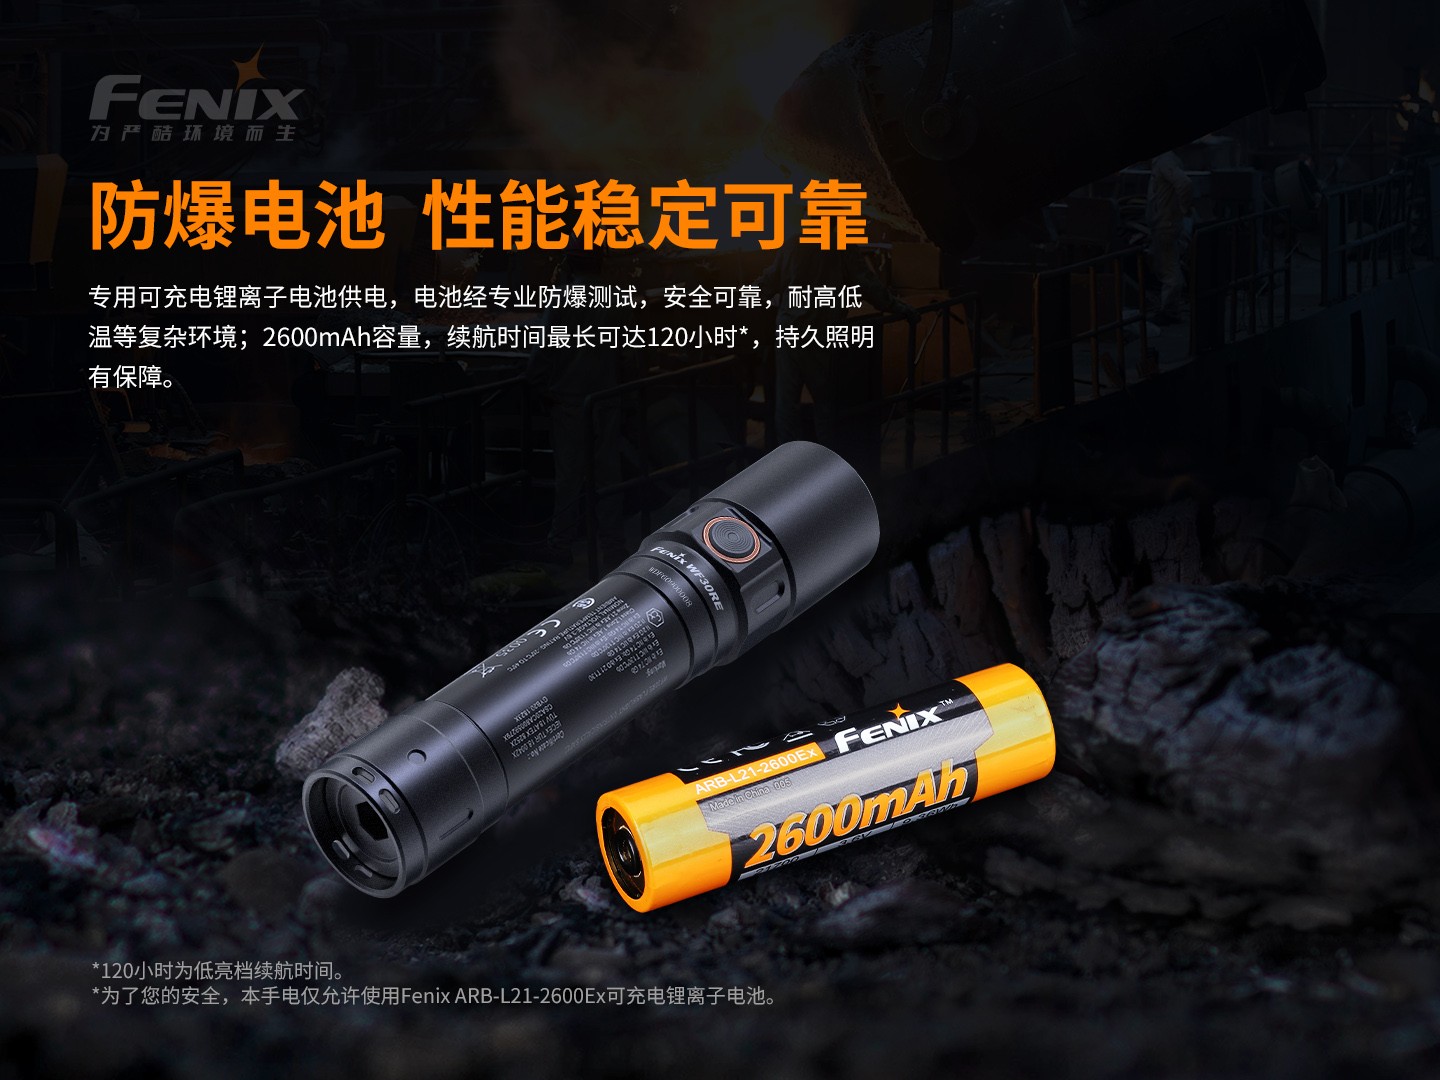 菲尼克斯（Fenix）WF30RE 高亮度 安全型防爆手电